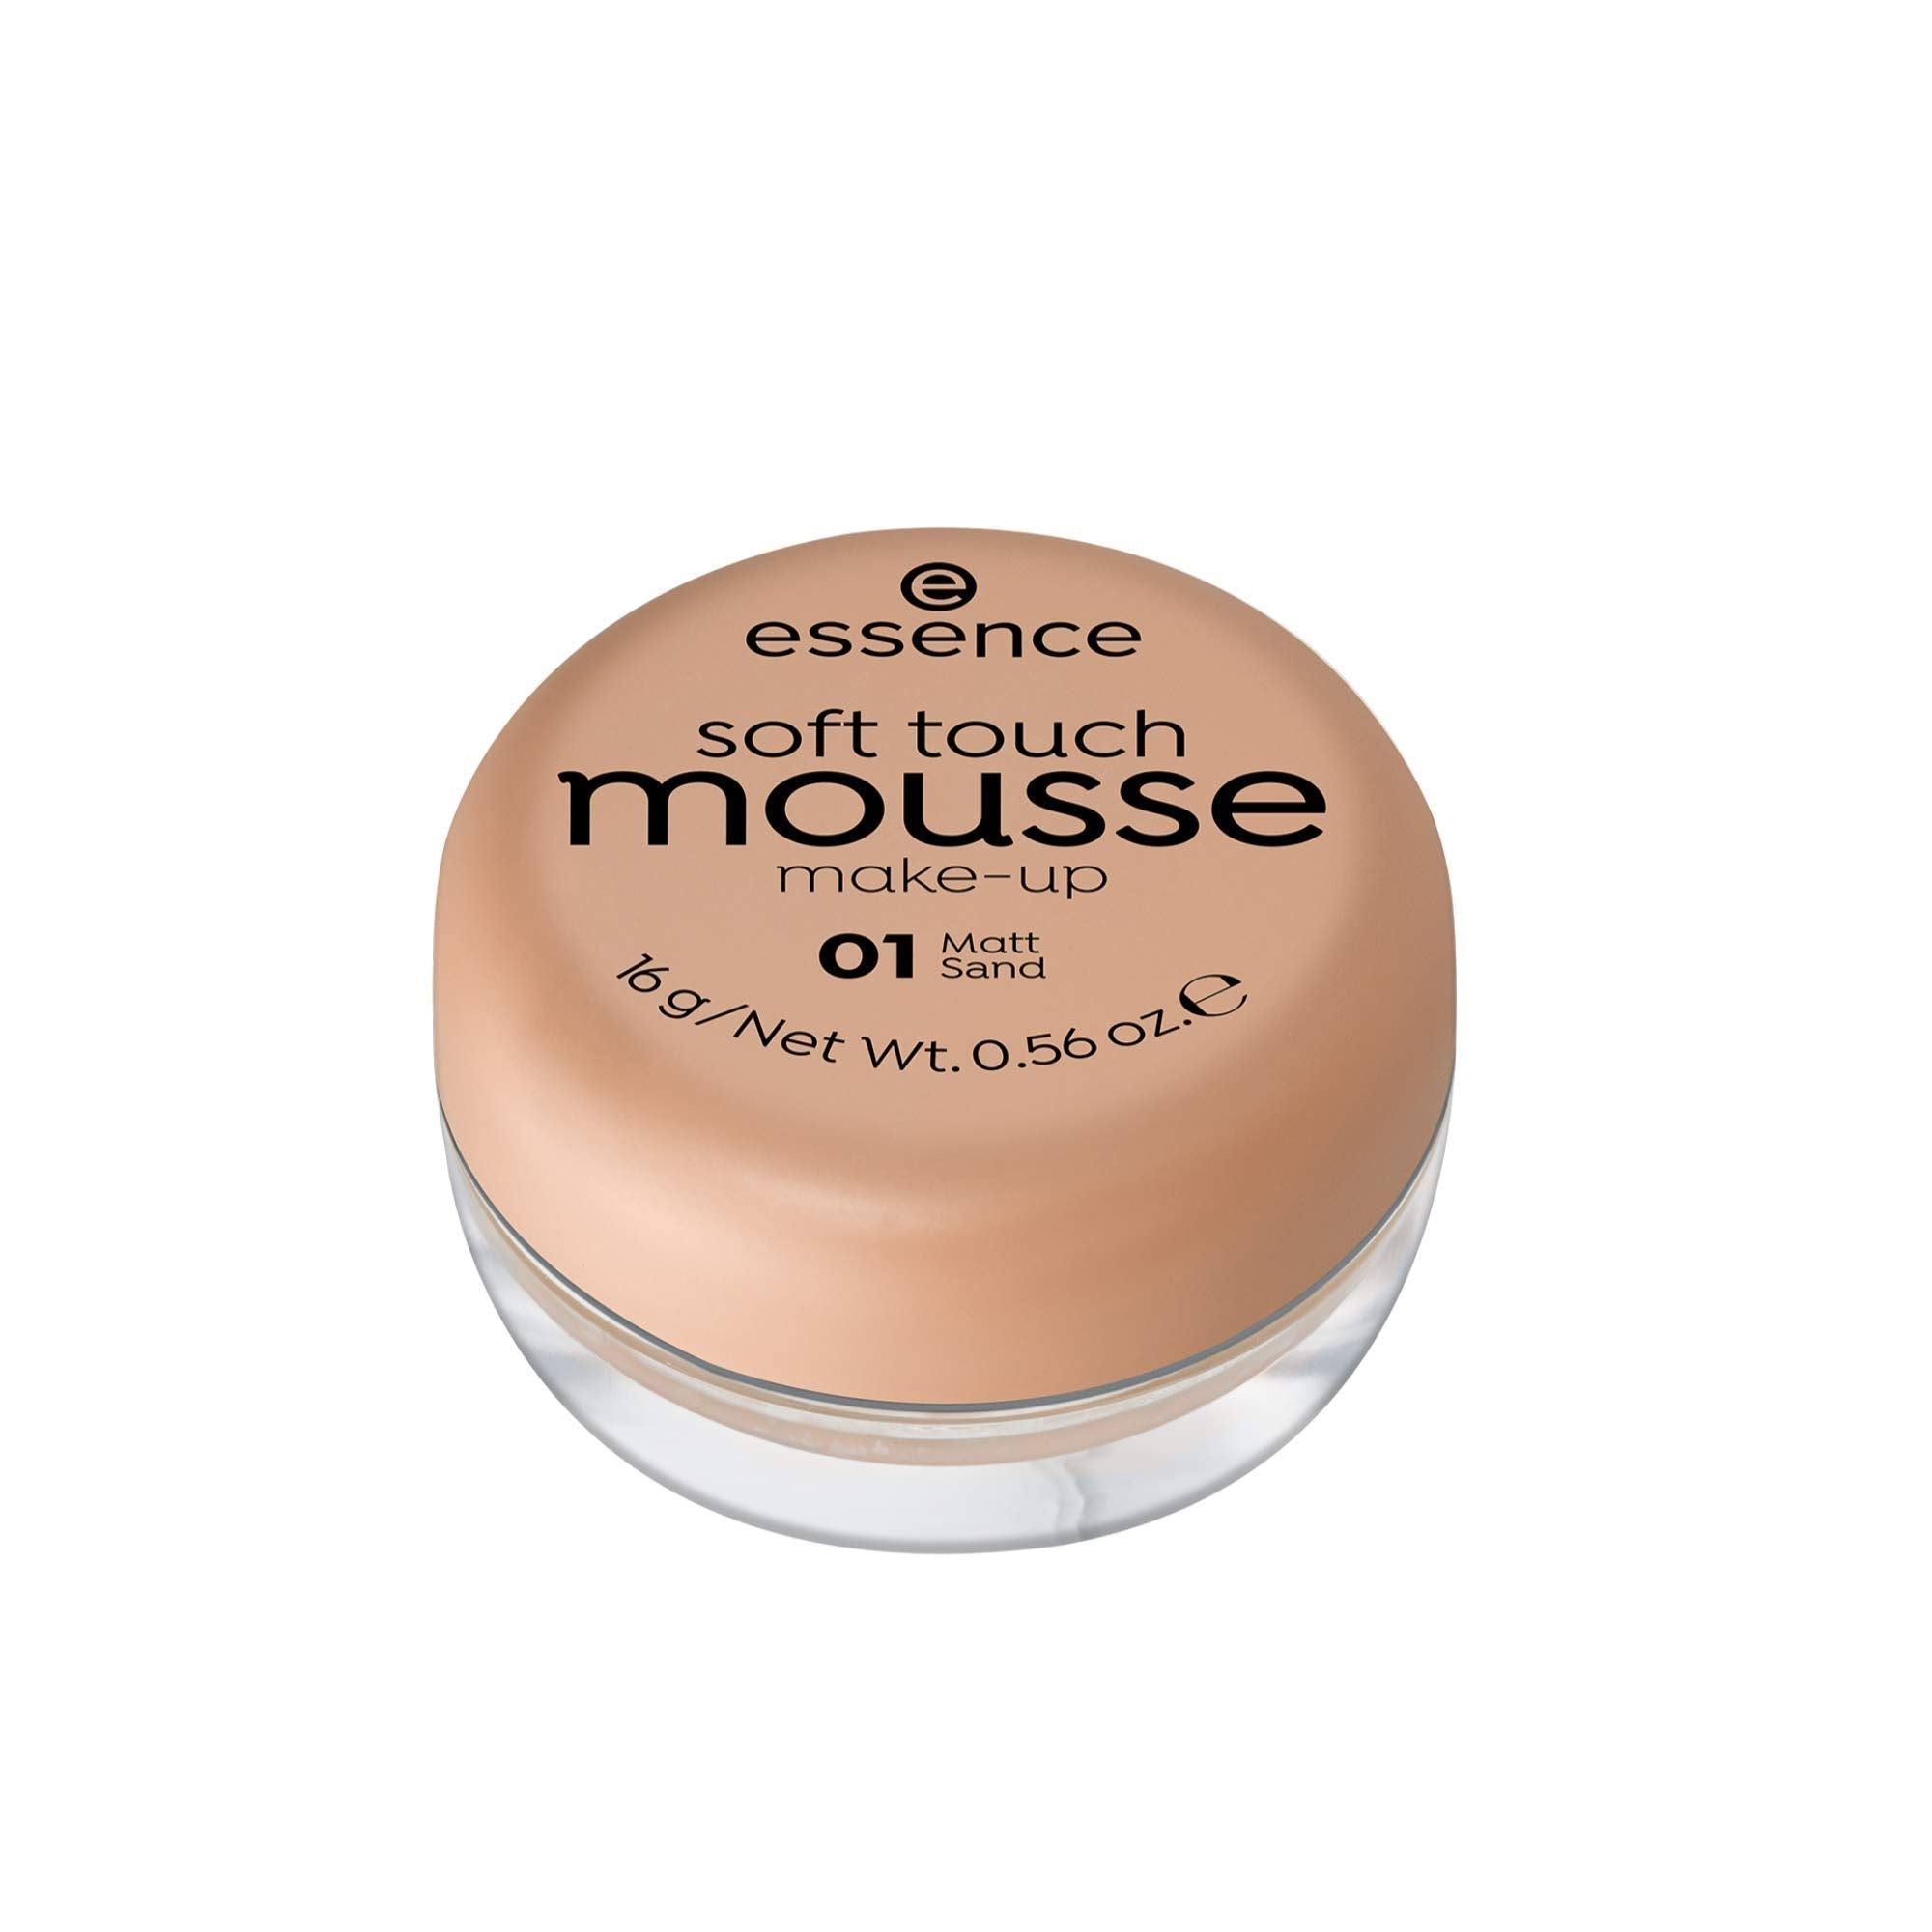 Essence Soft Touch Mousse Make-up 01 Matt Sand 16G